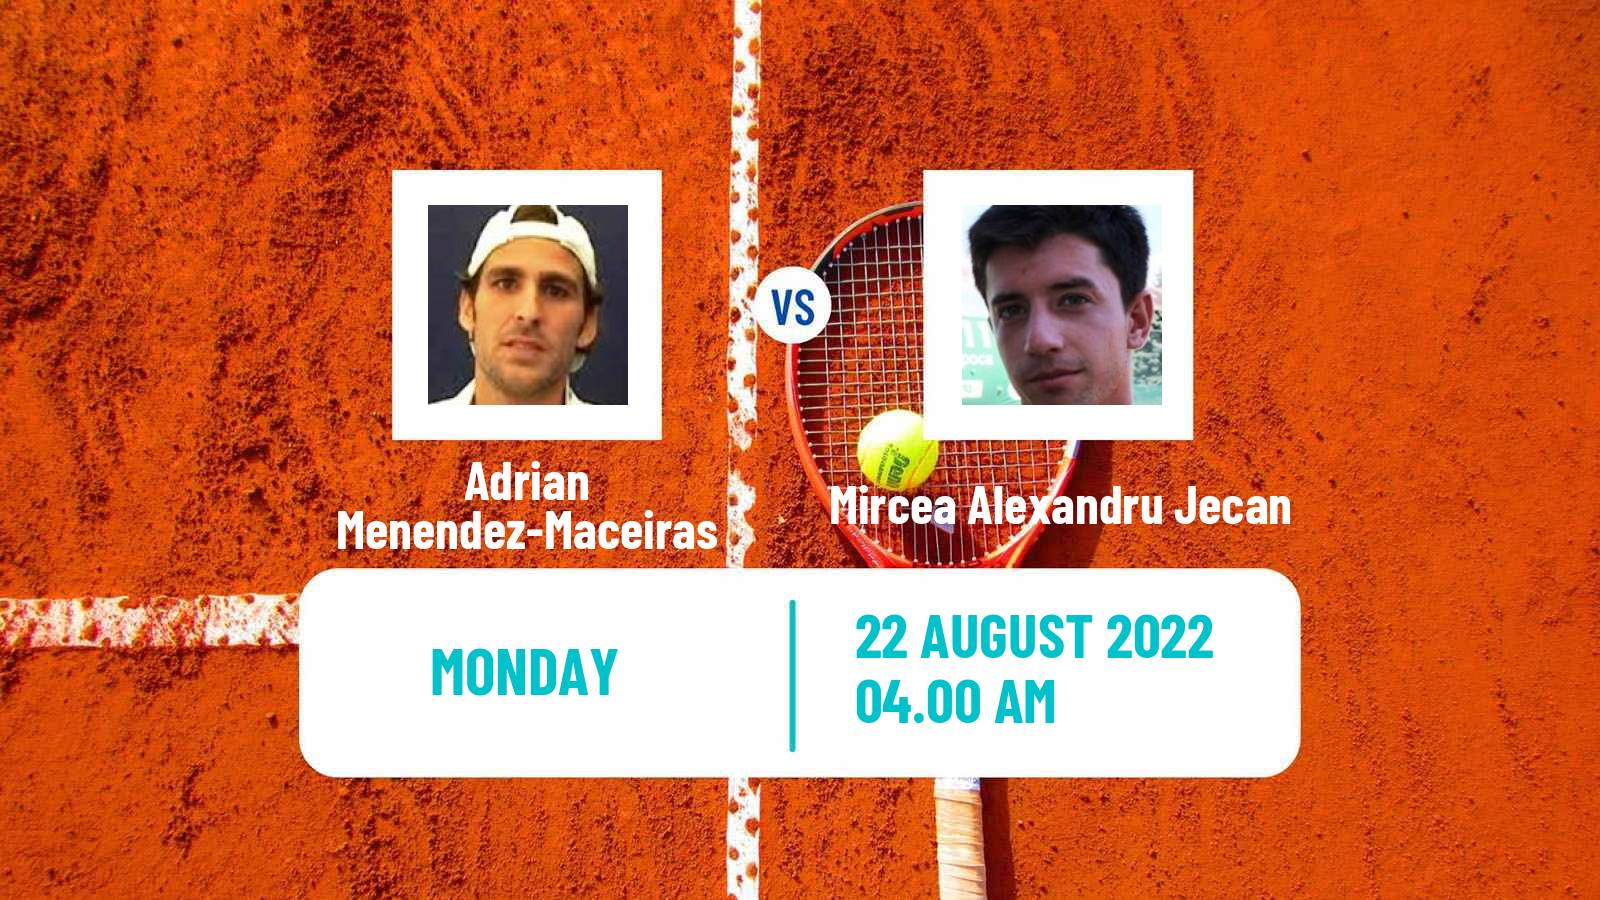 Tennis ATP Challenger Adrian Menendez-Maceiras - Mircea Alexandru Jecan